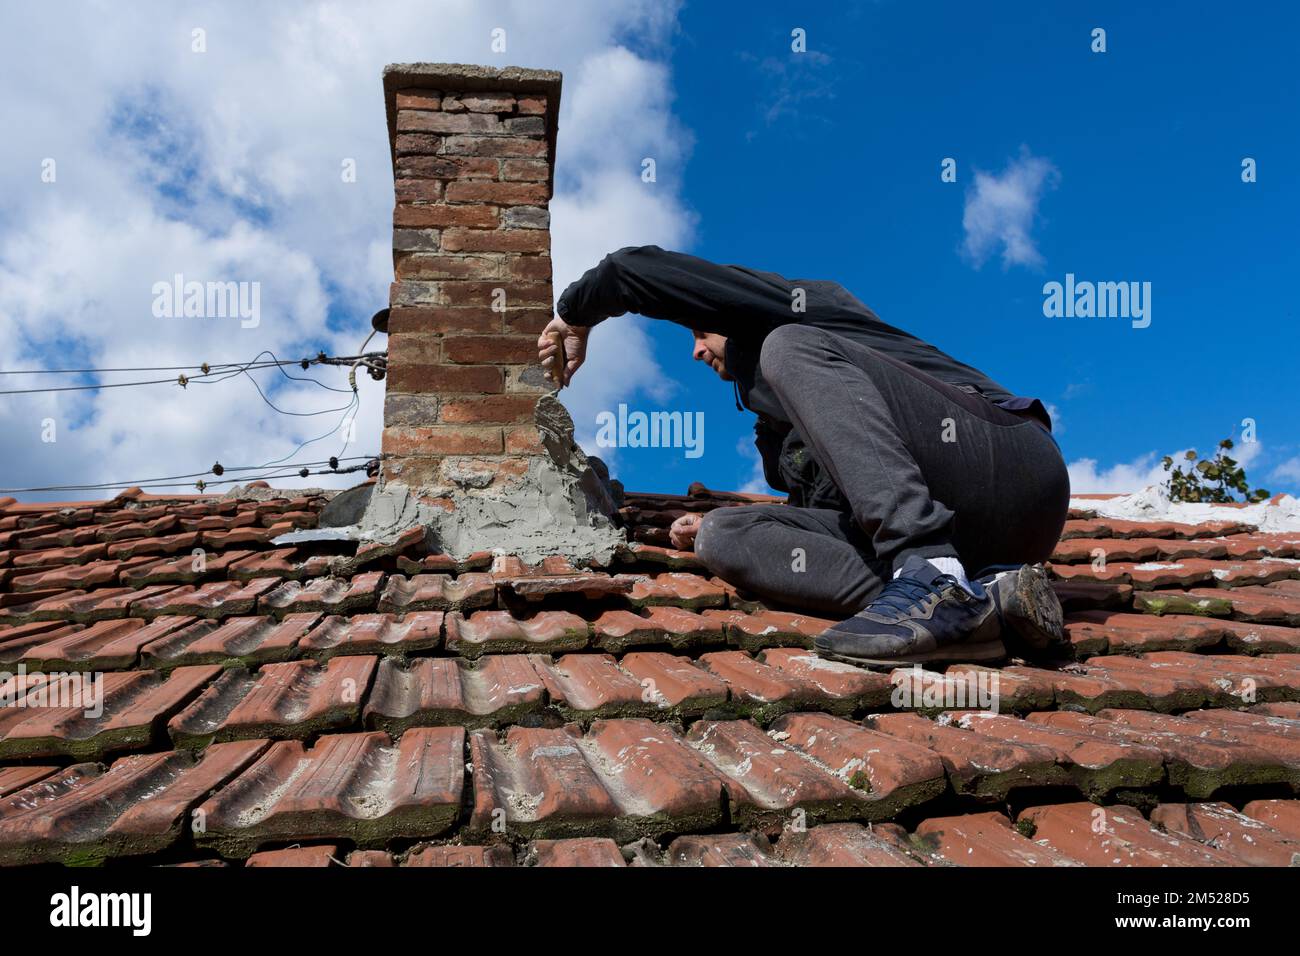 Ein erfahrener Handwerker auf dem Dach eines alten Hauses, der eine Kelle benutzt, um den Kamin zu reparieren. Der Mann sitzt konzentriert auf die anstehende Aufgabe. Himmel im Hintergrund Stockfoto